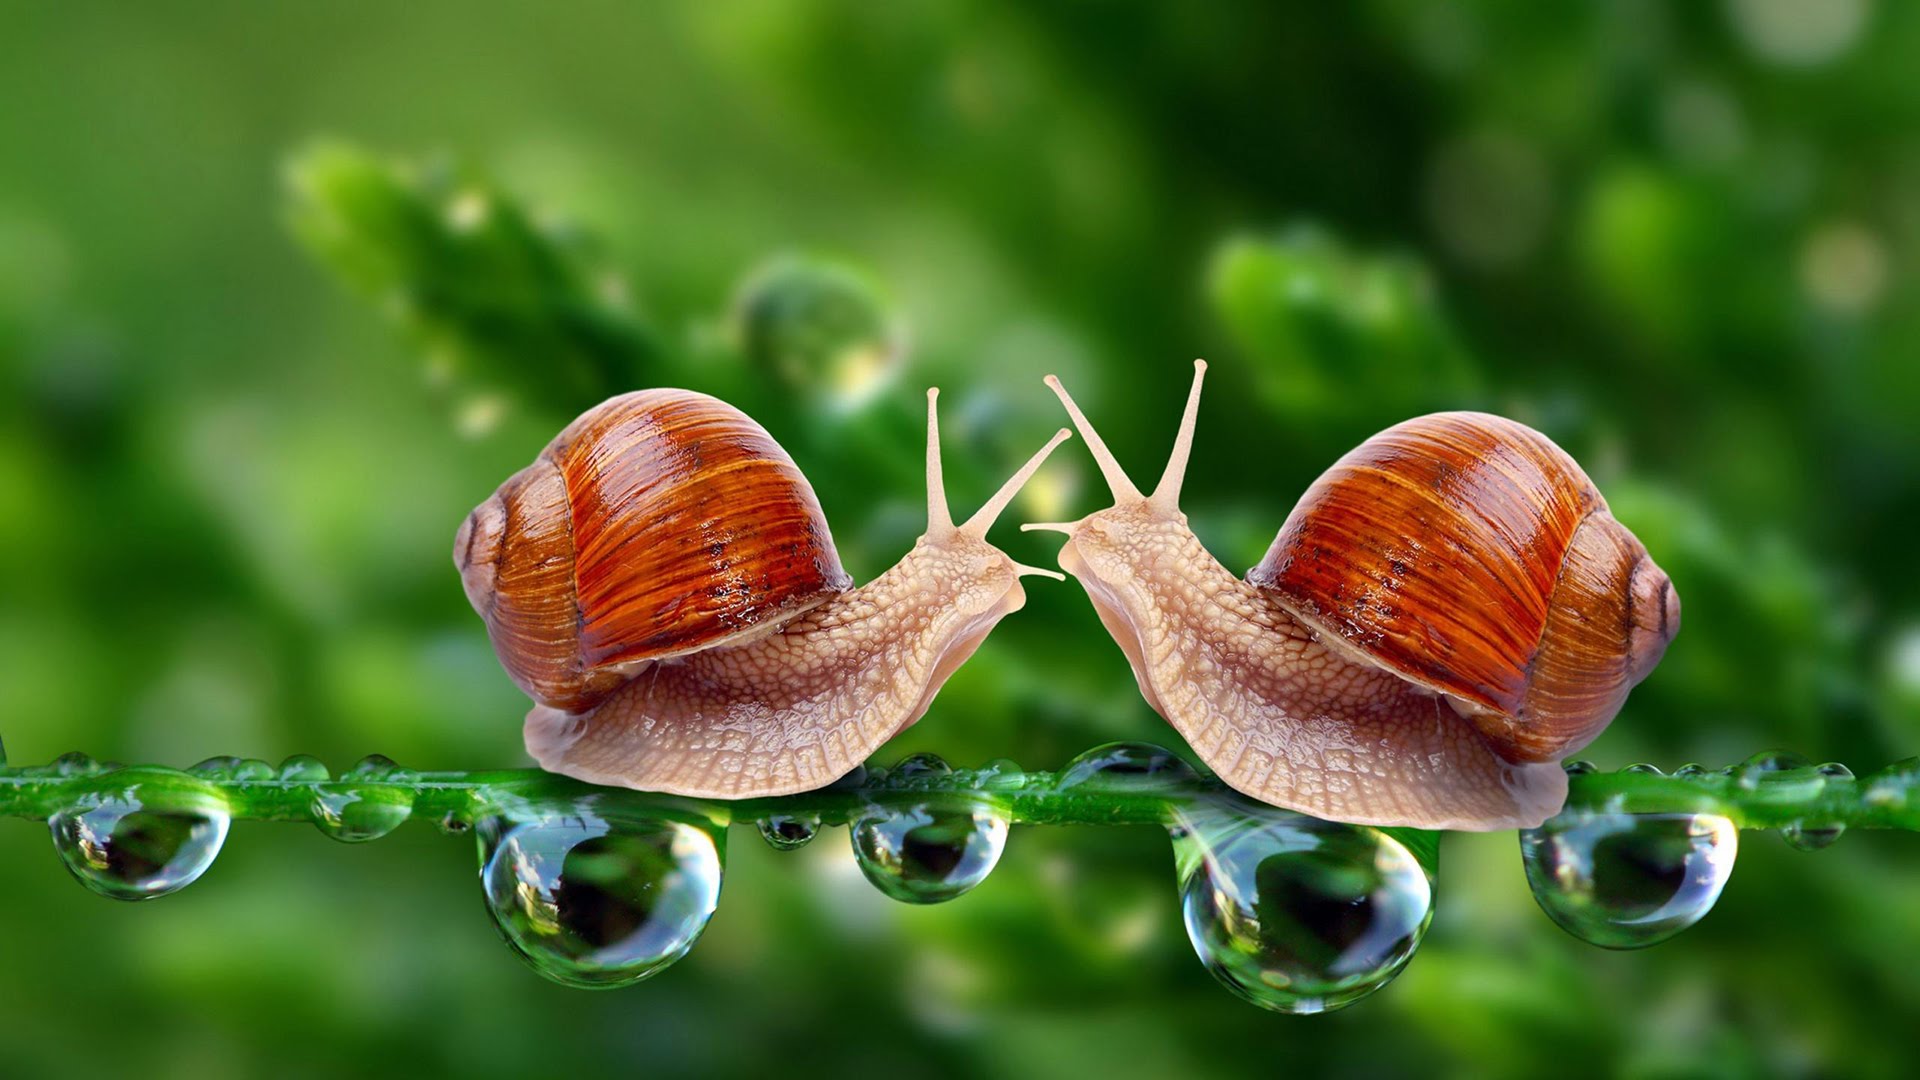 Beautiful snail photo